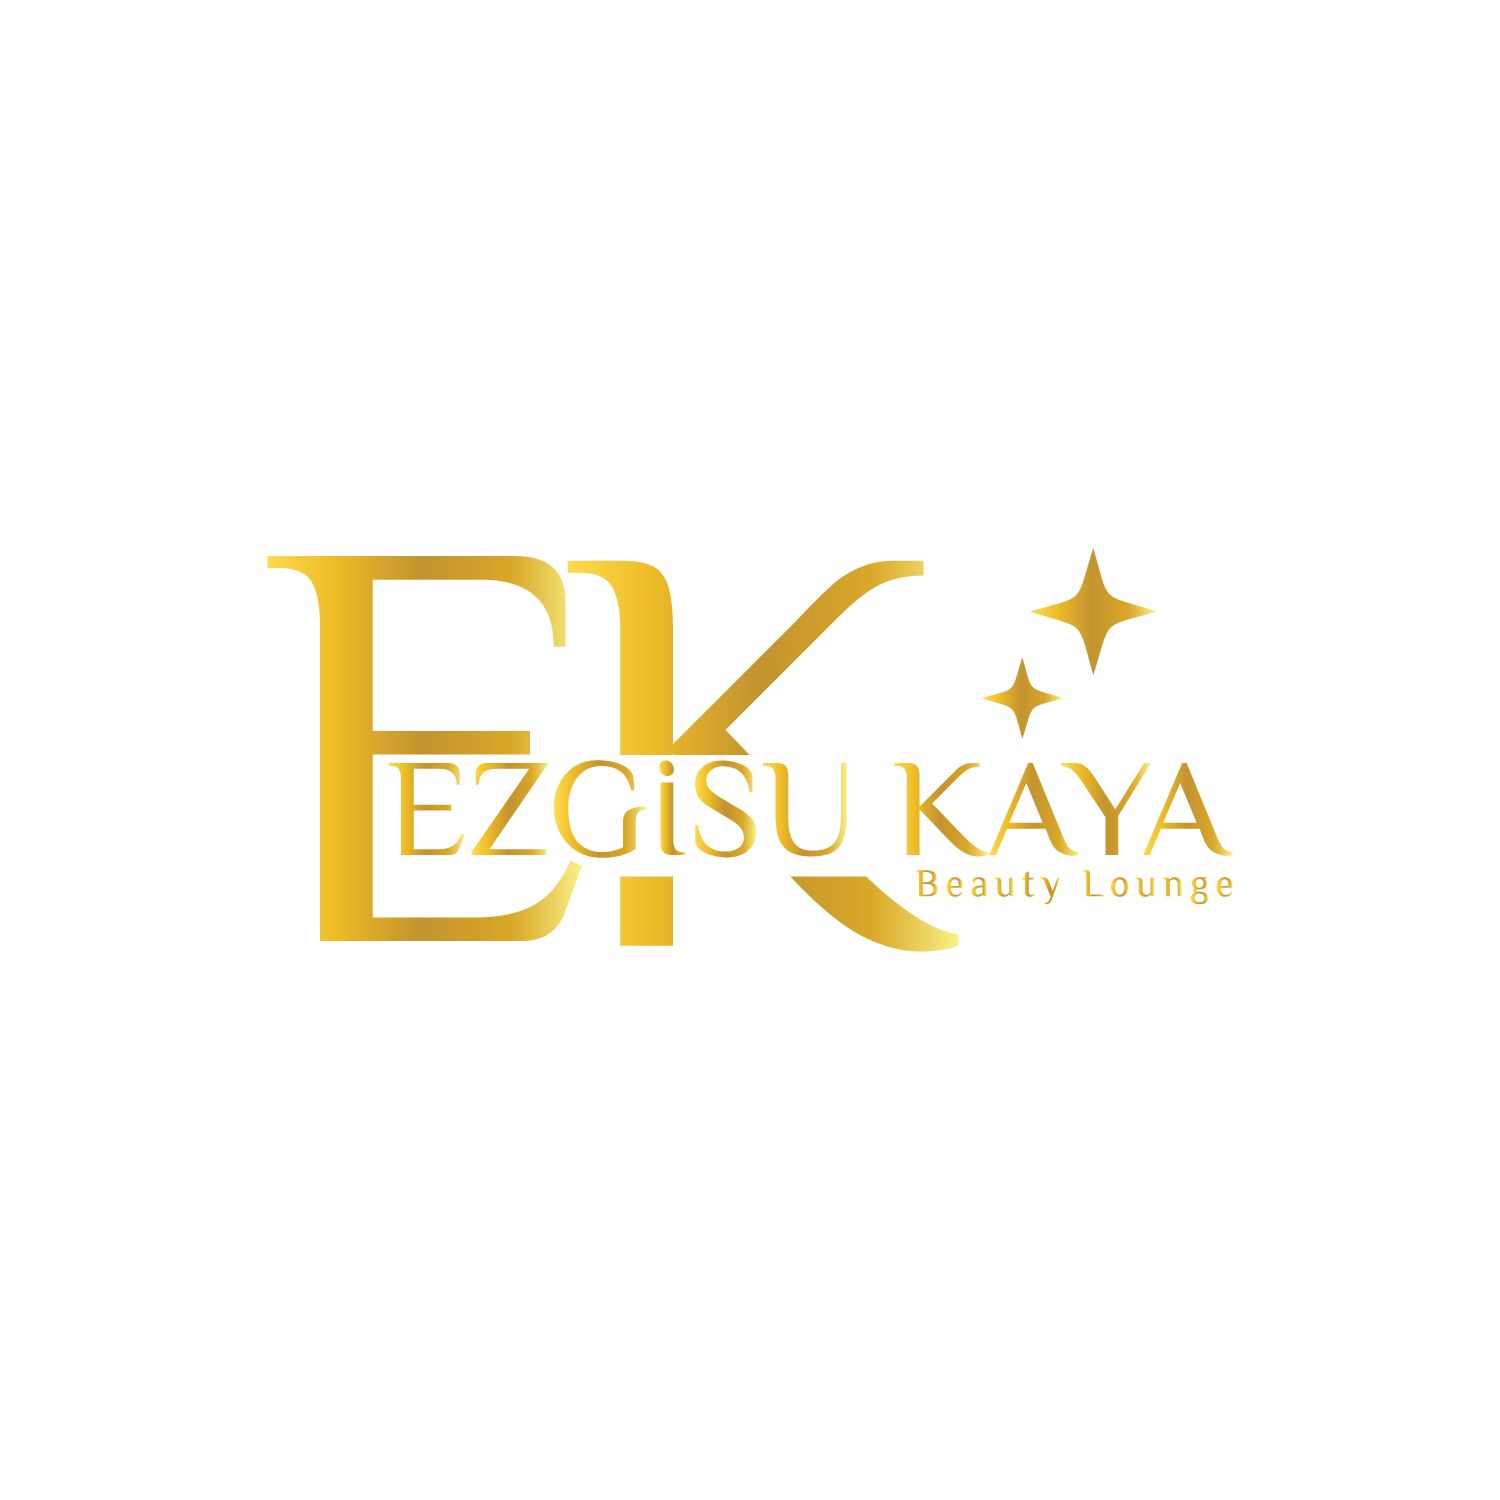 Ezgisu KAYA Beauty Lounge